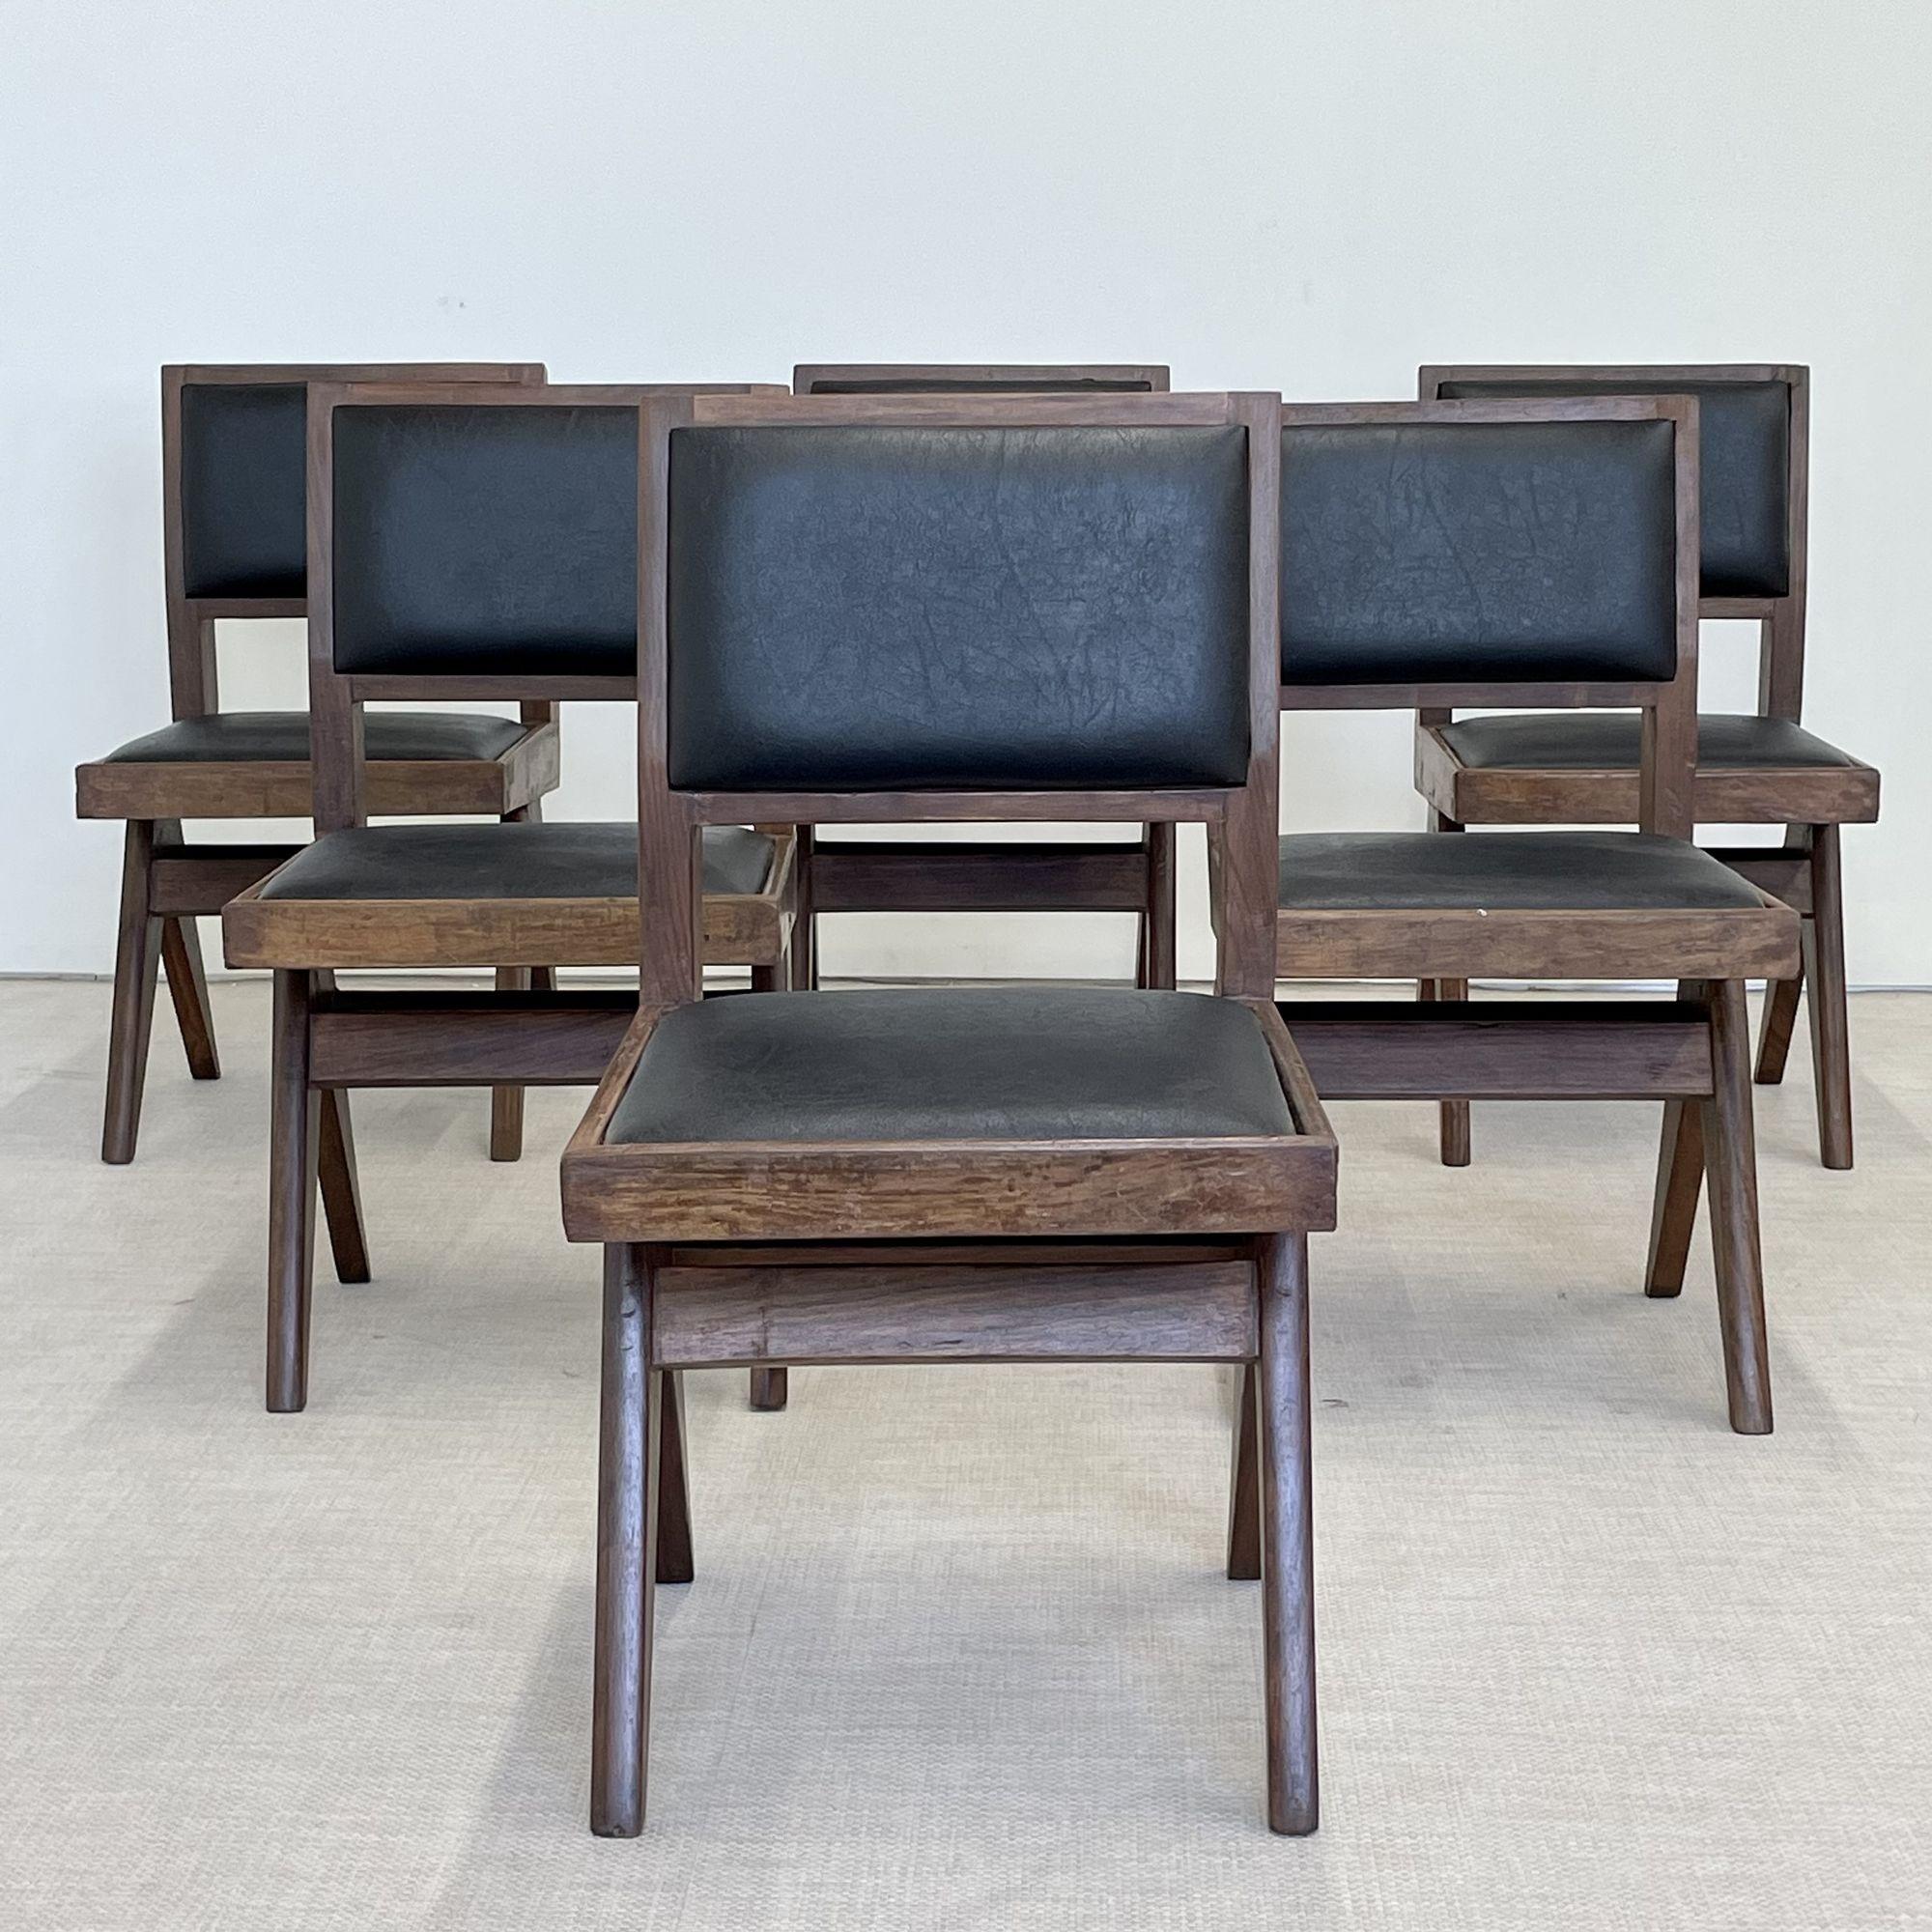 Pierre Jeanneret, France, mi-siècle moderne, six chaises de salle à manger, Chandigarh

Ensemble de six chaises de salle à manger sans accoudoirs Pierre Jeanneret, modèle PJ-SI-25-E. Rare ensemble de six chaises de salle à manger tapissées ayant un